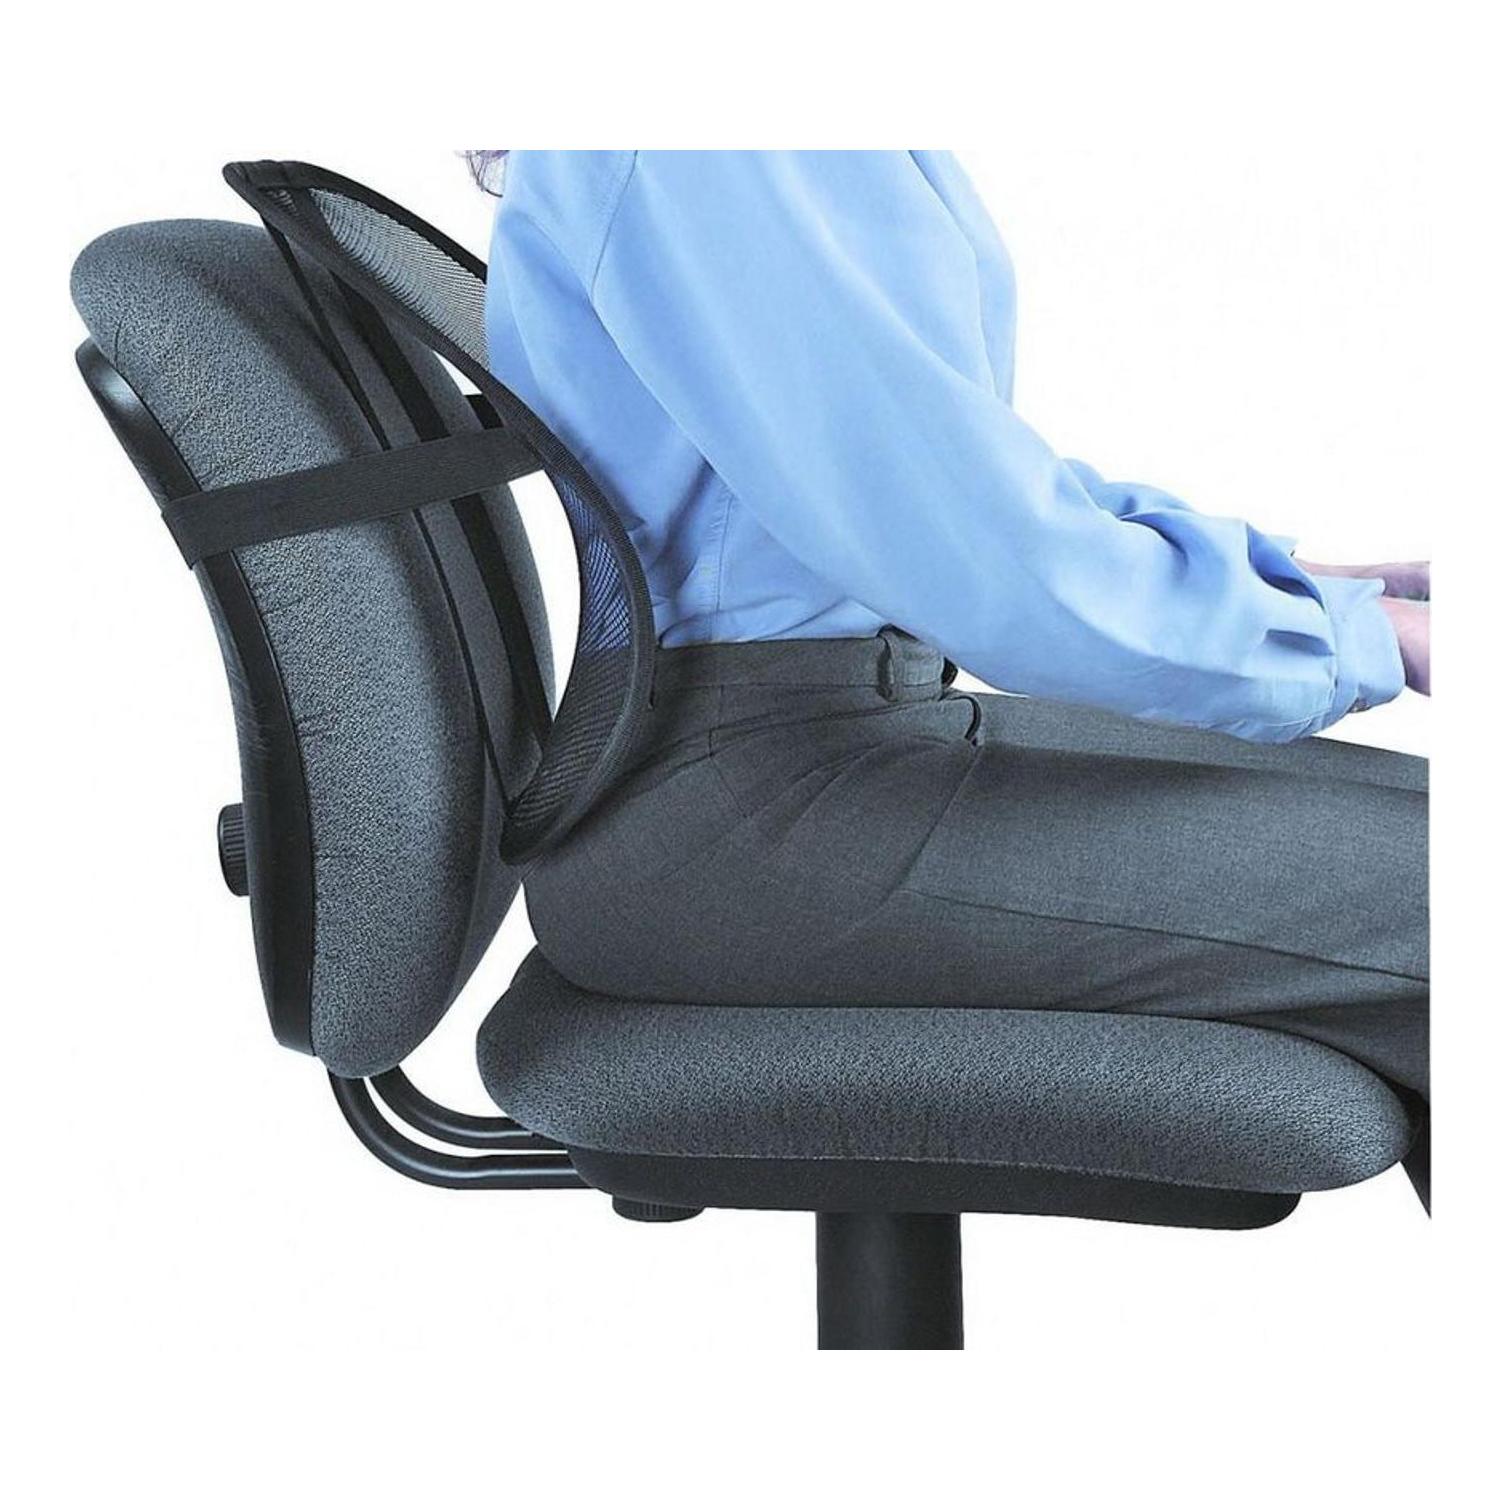 Ортопедическая подушка для поясницы на стул